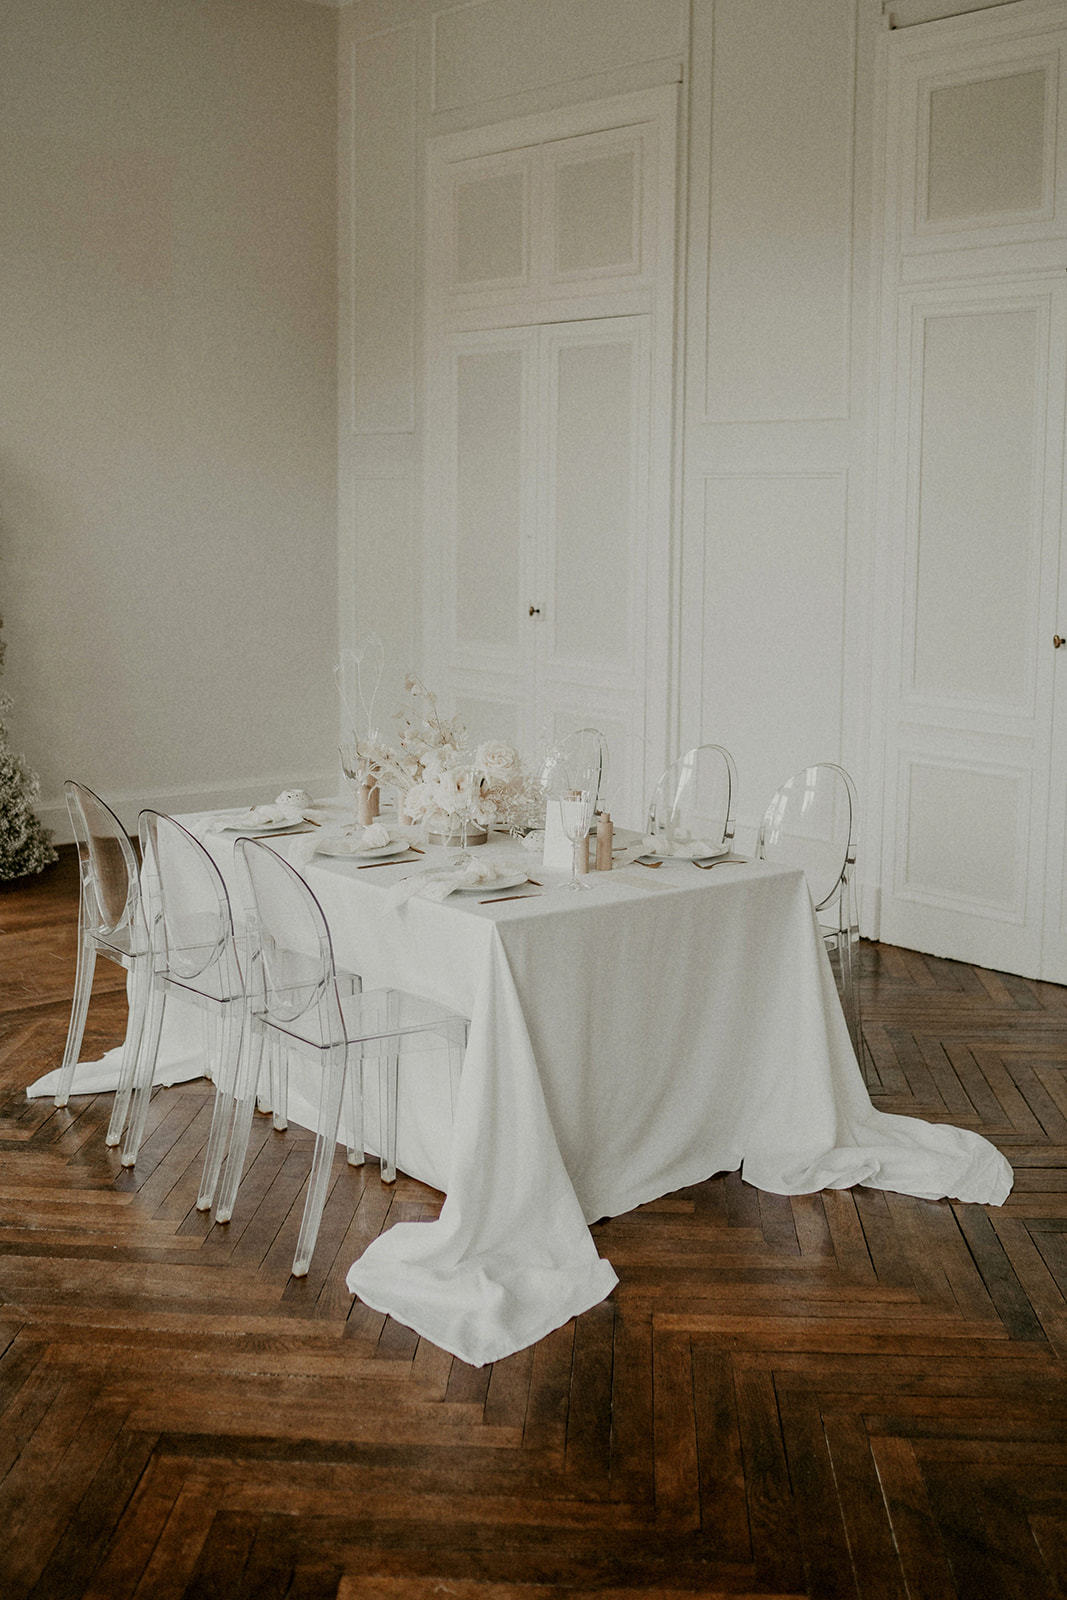 Mariage minimaliste et raffiné au Château - Blog Mariage Madame C